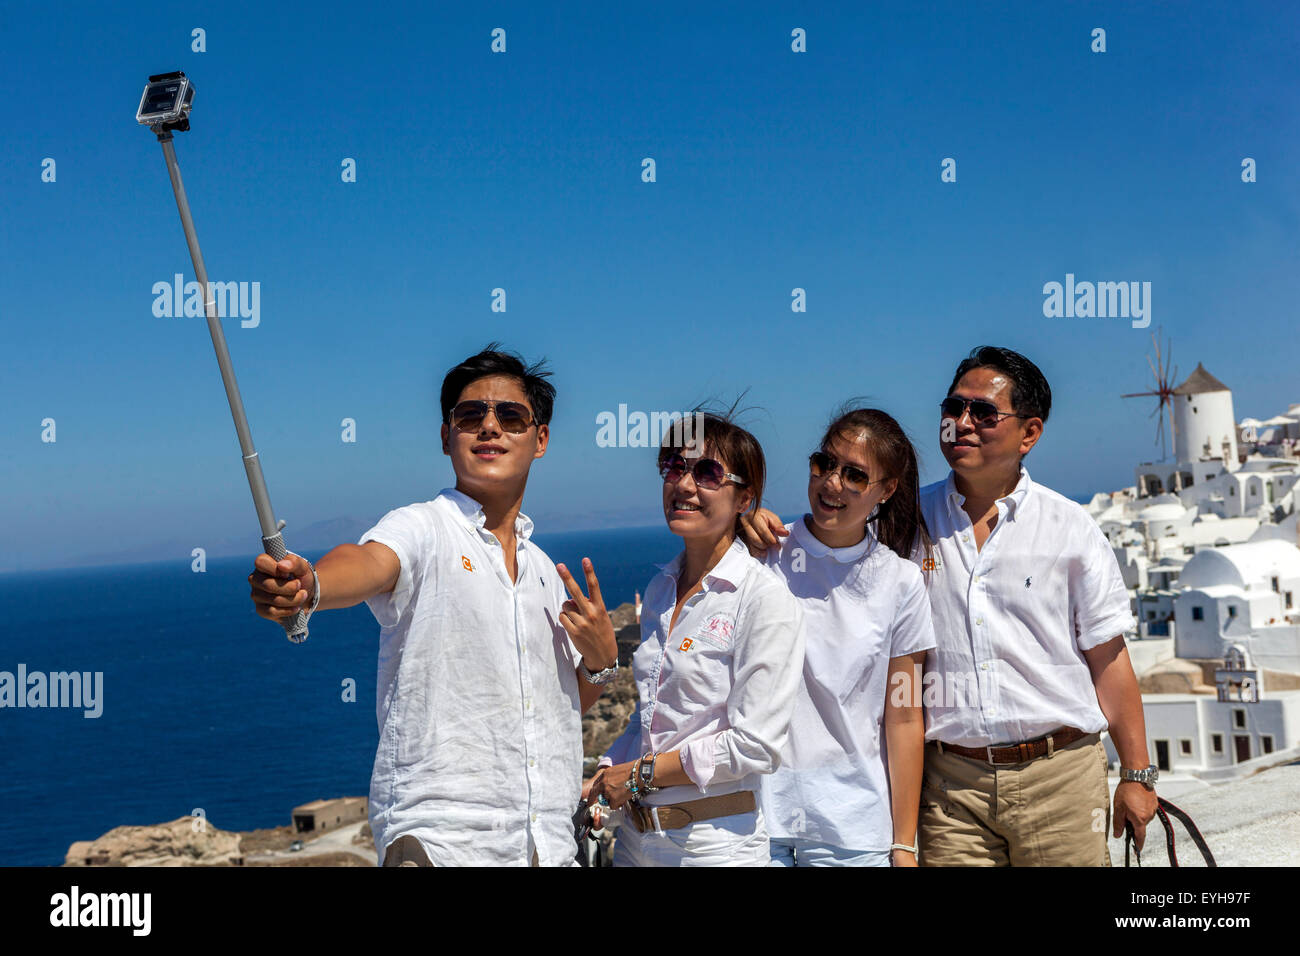 Asiatische Touristen nehmen Selfie auf Smartphone Kamera Selfie Stick Menschen Gruppe Telefon Foto Freunde griechische Inseln Oia Santorini Griechenland Europa Stockfoto